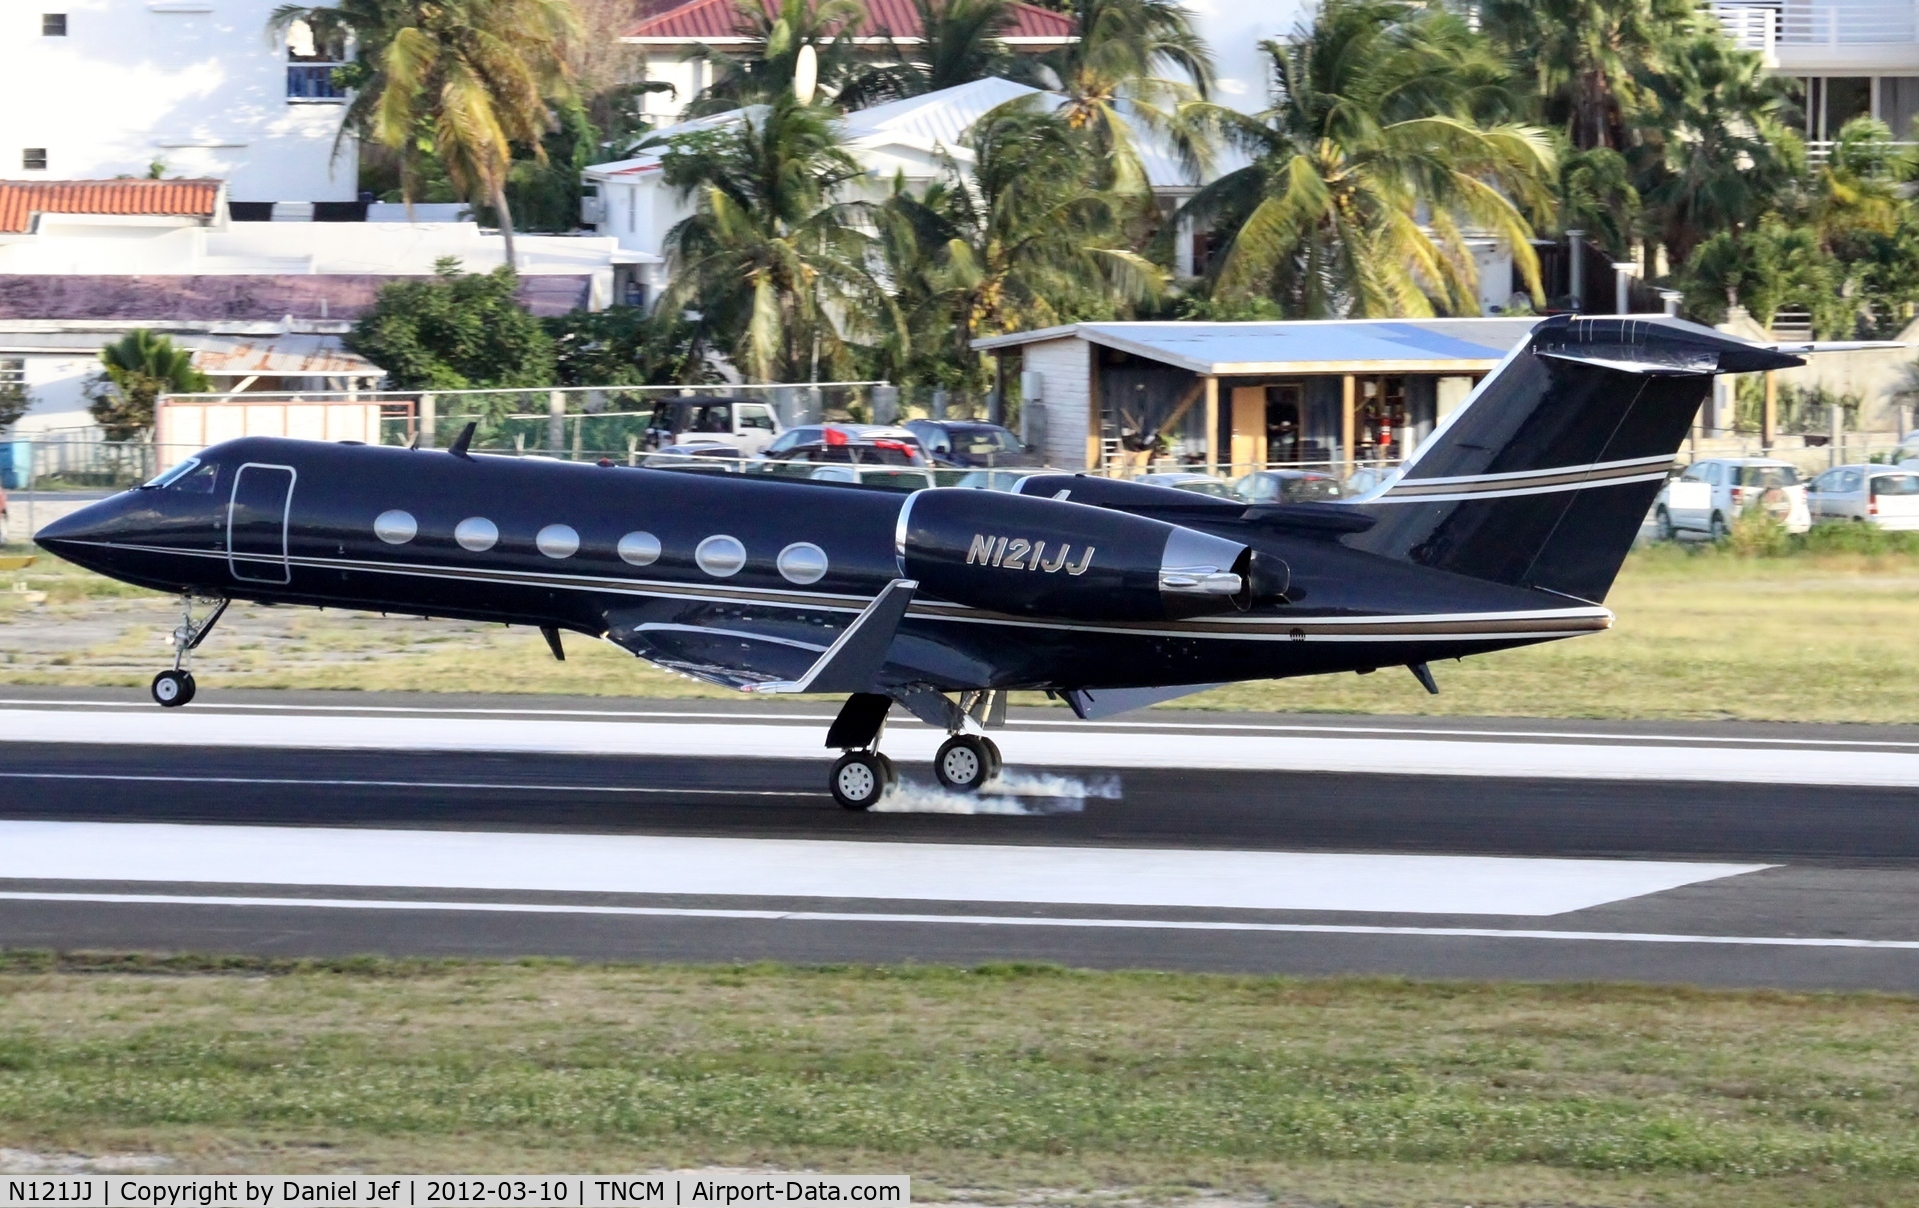 N121JJ, 2002 Gulfstream Aerospace G-IV SP C/N 1482, N121JJ